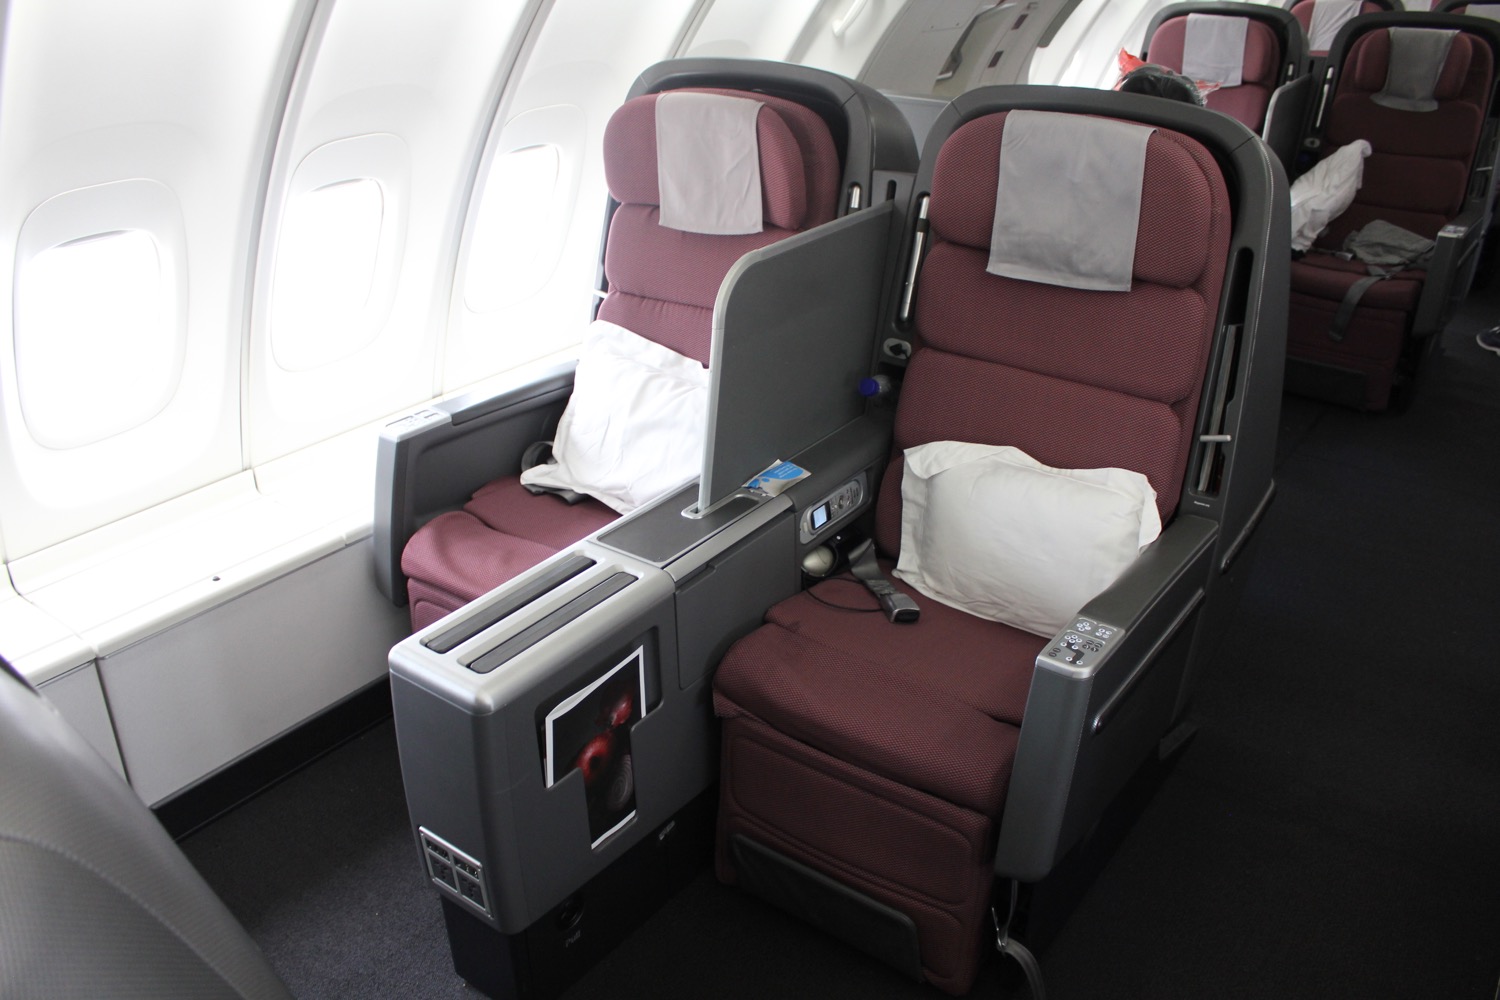 Qantas Business Class 747 Review - 40